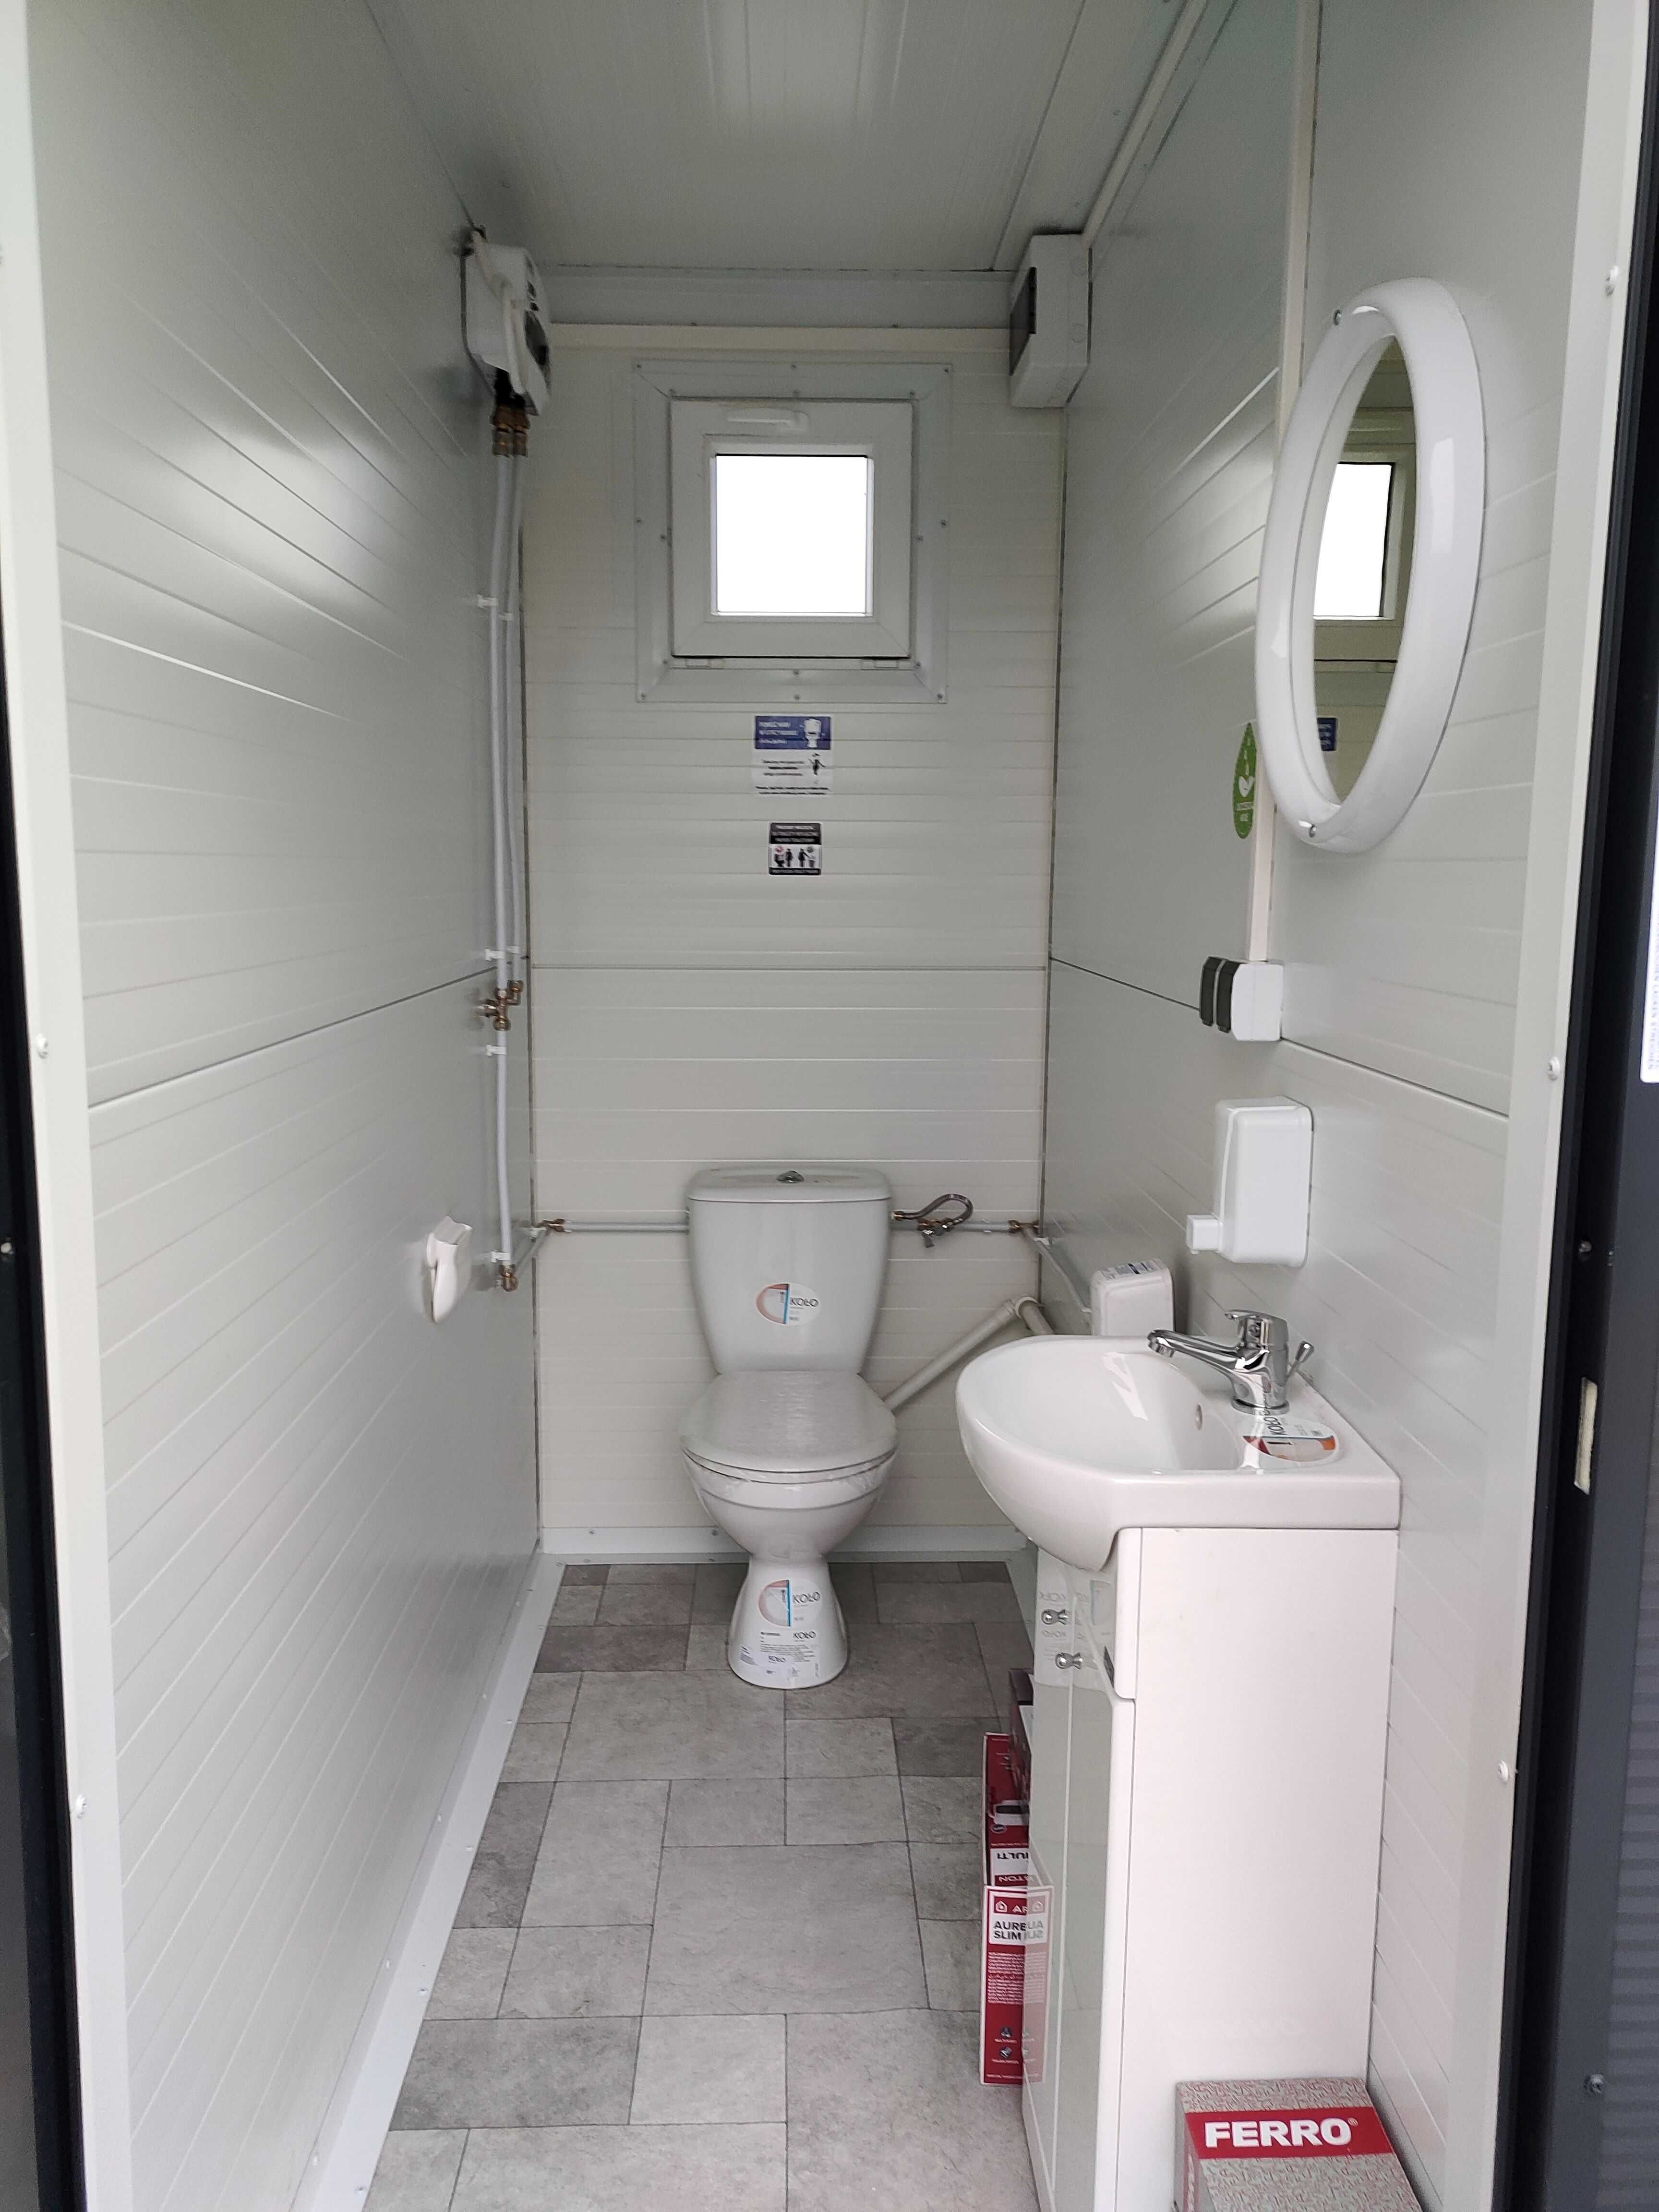 WC toaleta łazienka sanitarny pawilon kontener socjal natrysk prysznic